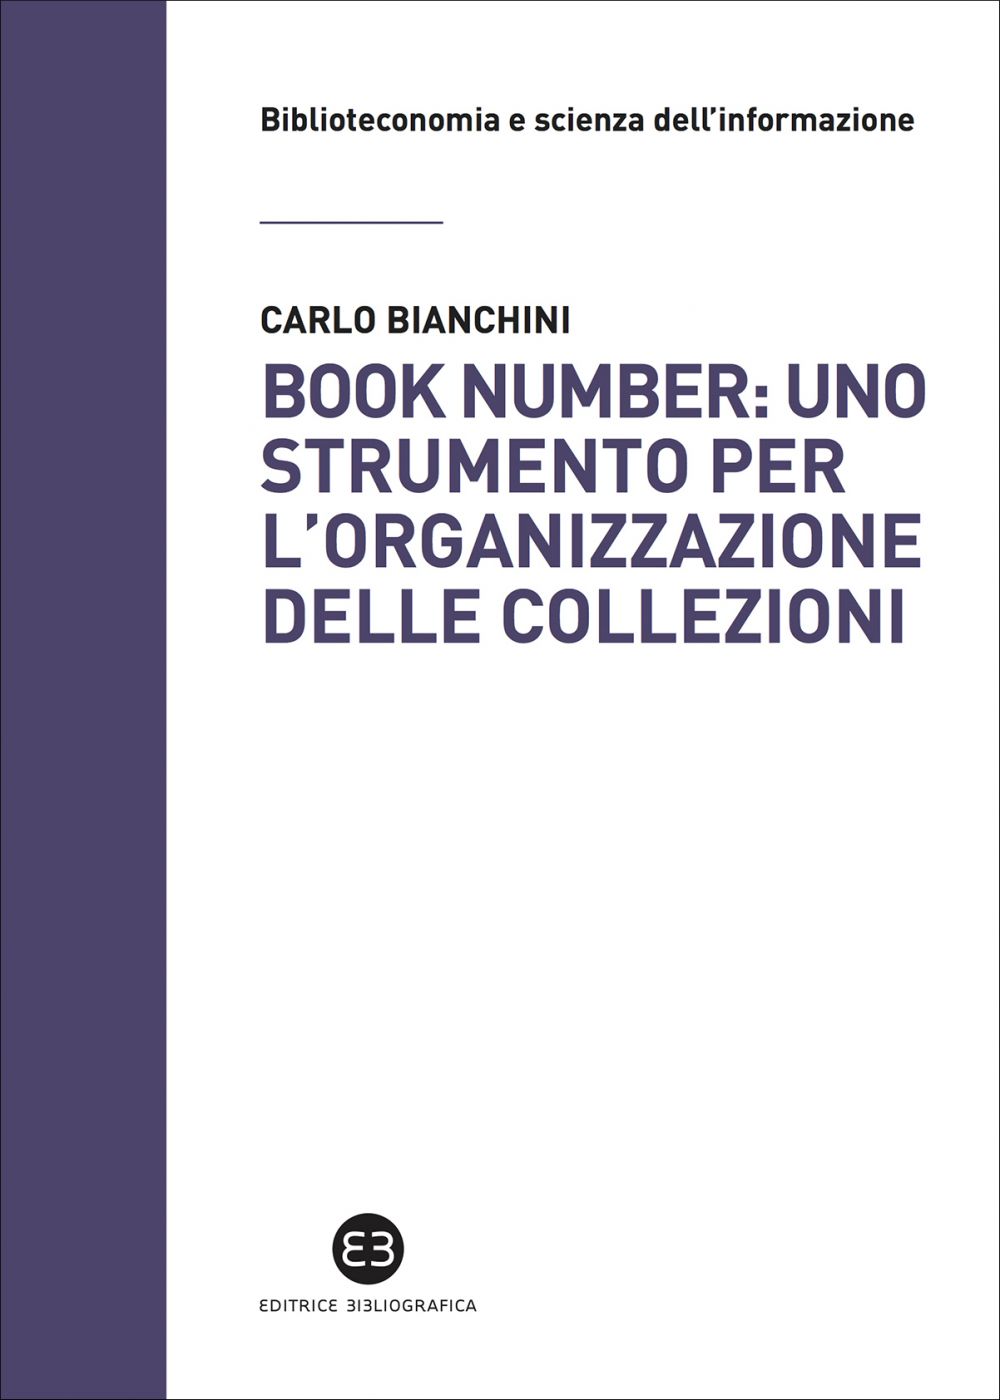 Book number: uno strumento per l'organizzazione delle collezioni